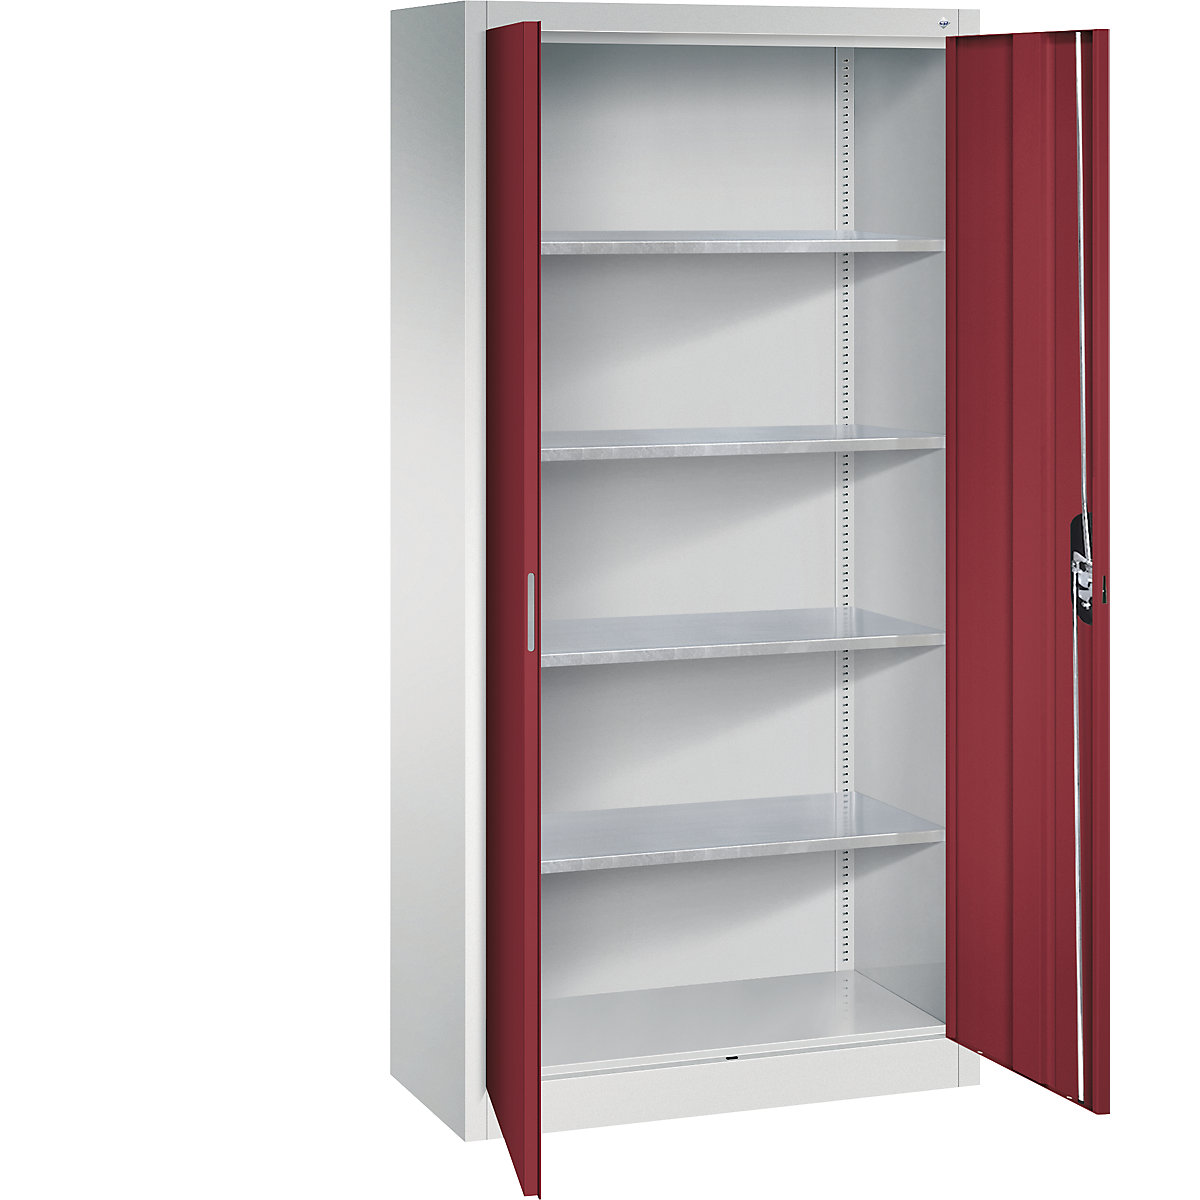 Warsztatowa szafka z drzwiami skrzydłowymi – C+P, wys. x szer. x głęb. 1950 x 930 x 400 mm, jasnoszara / rubinowo-czerwona-12